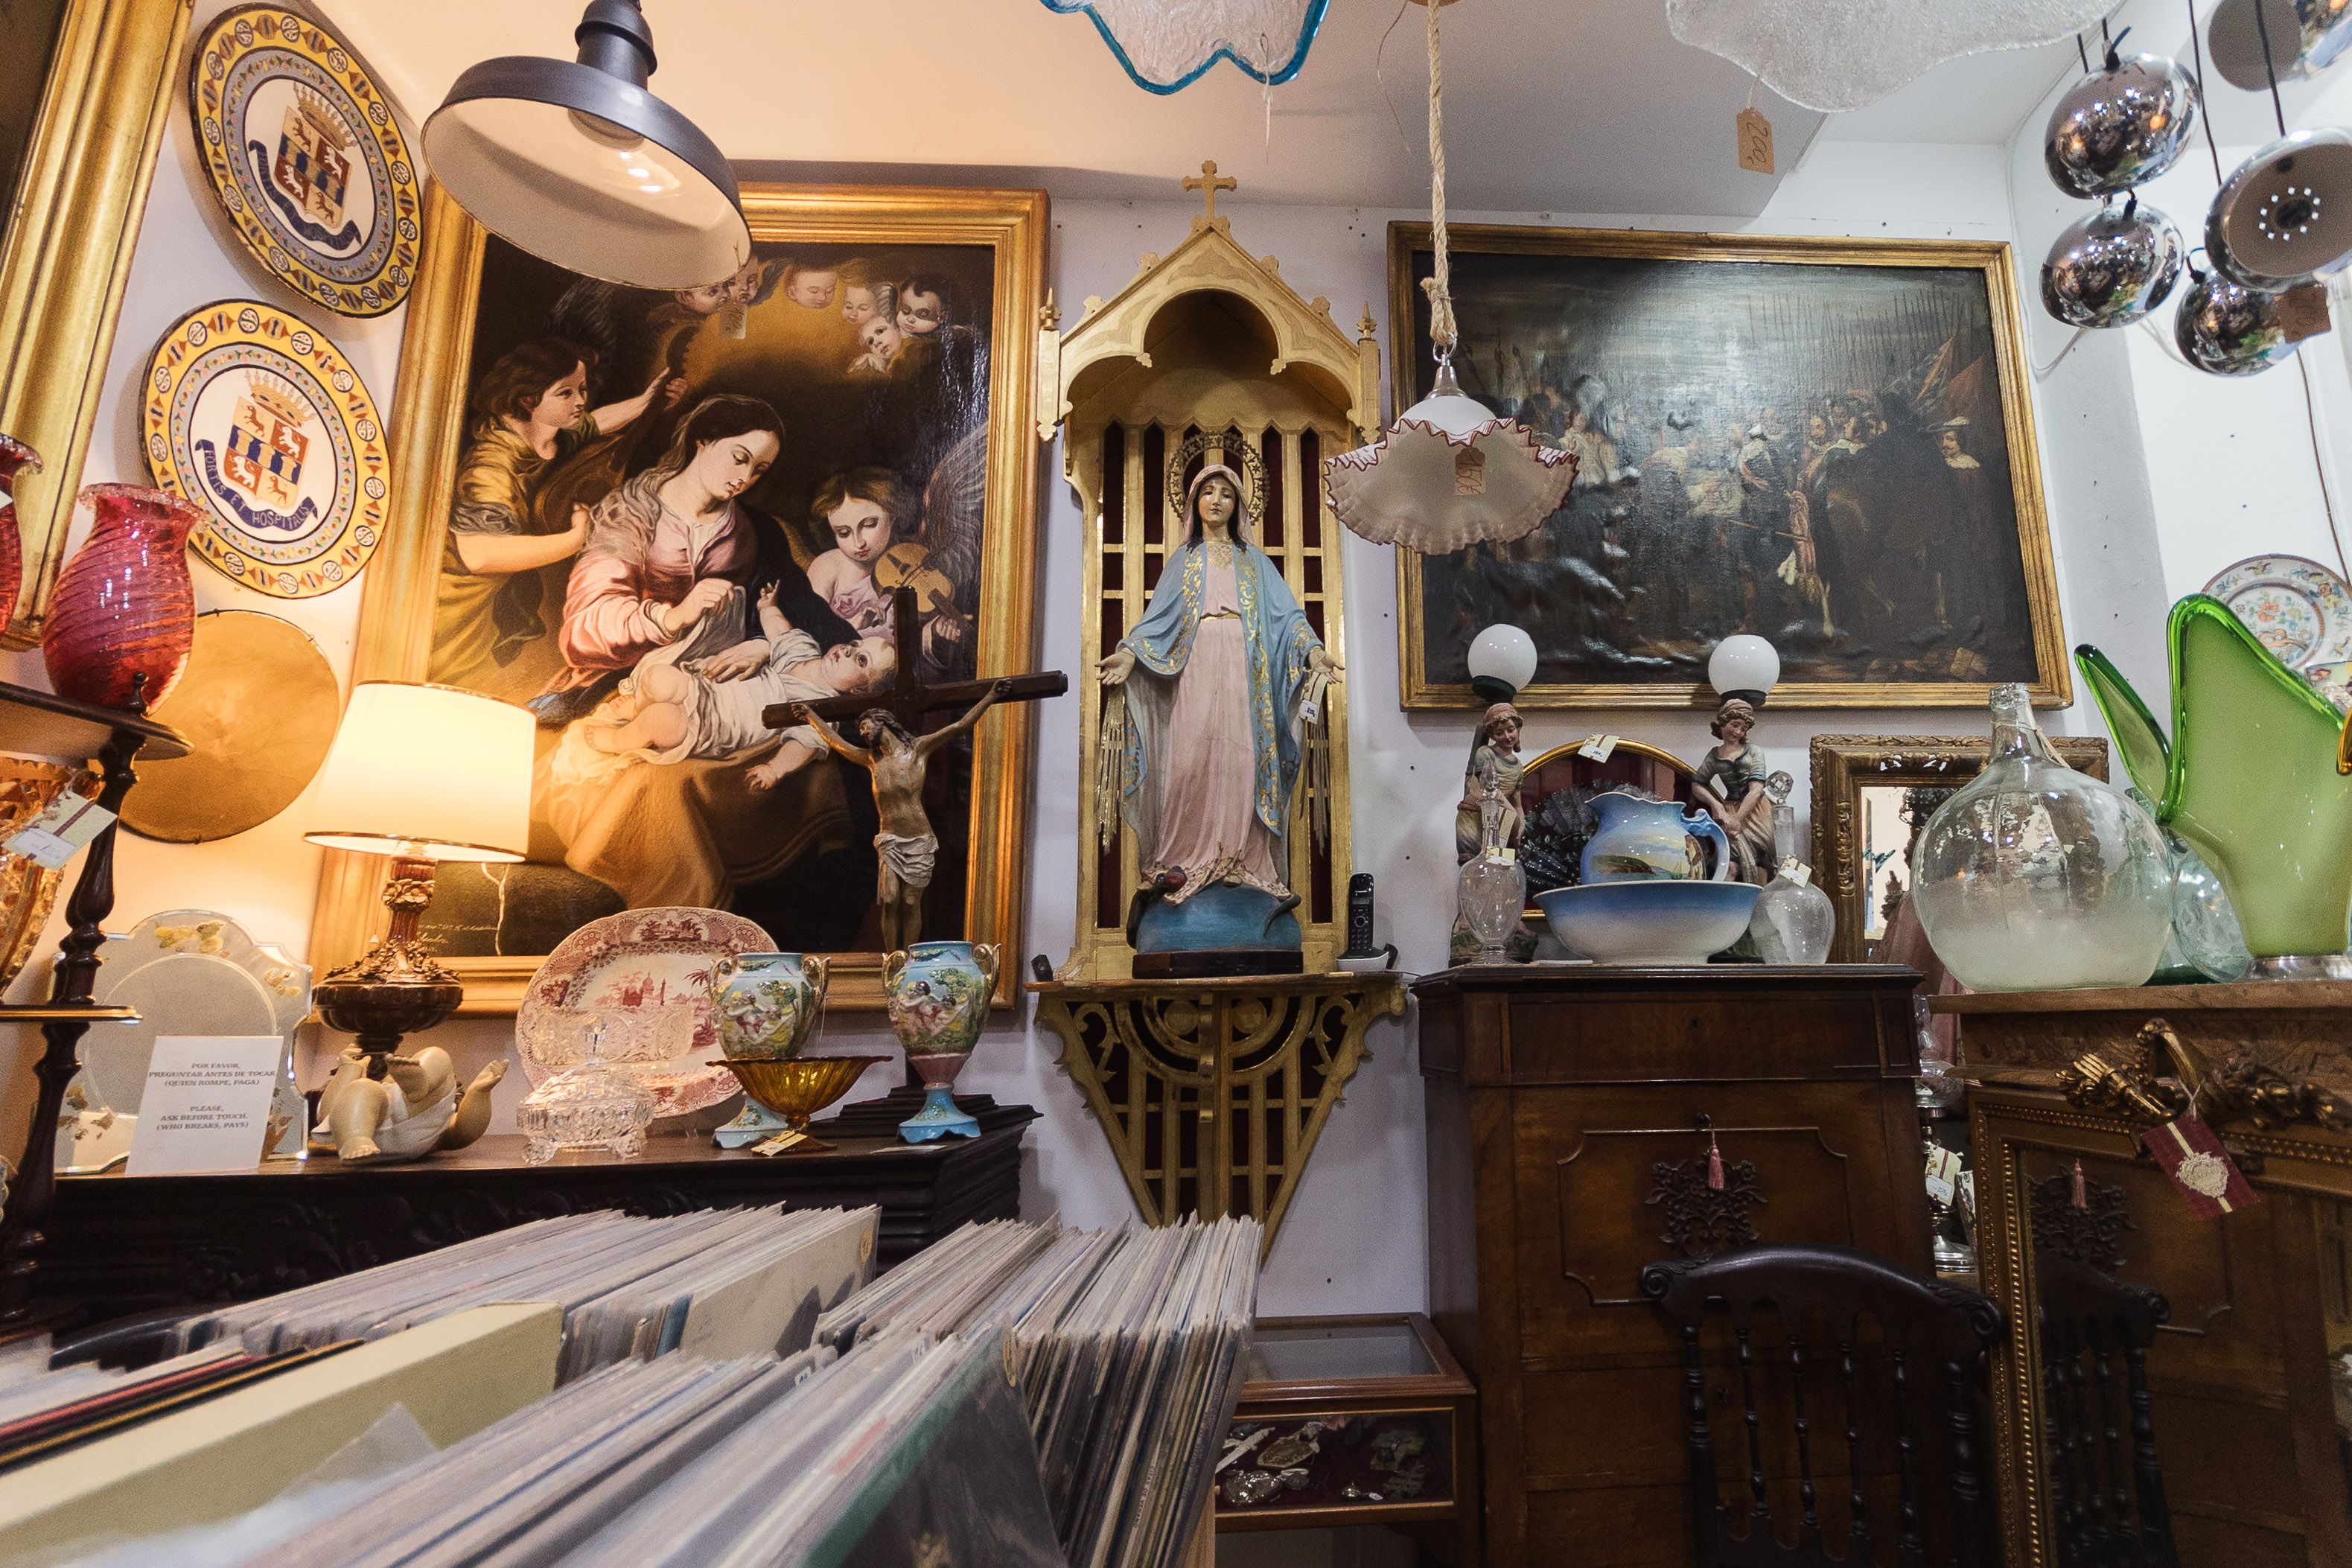 Interior de la tienda de antigüedades y coleccionismo.